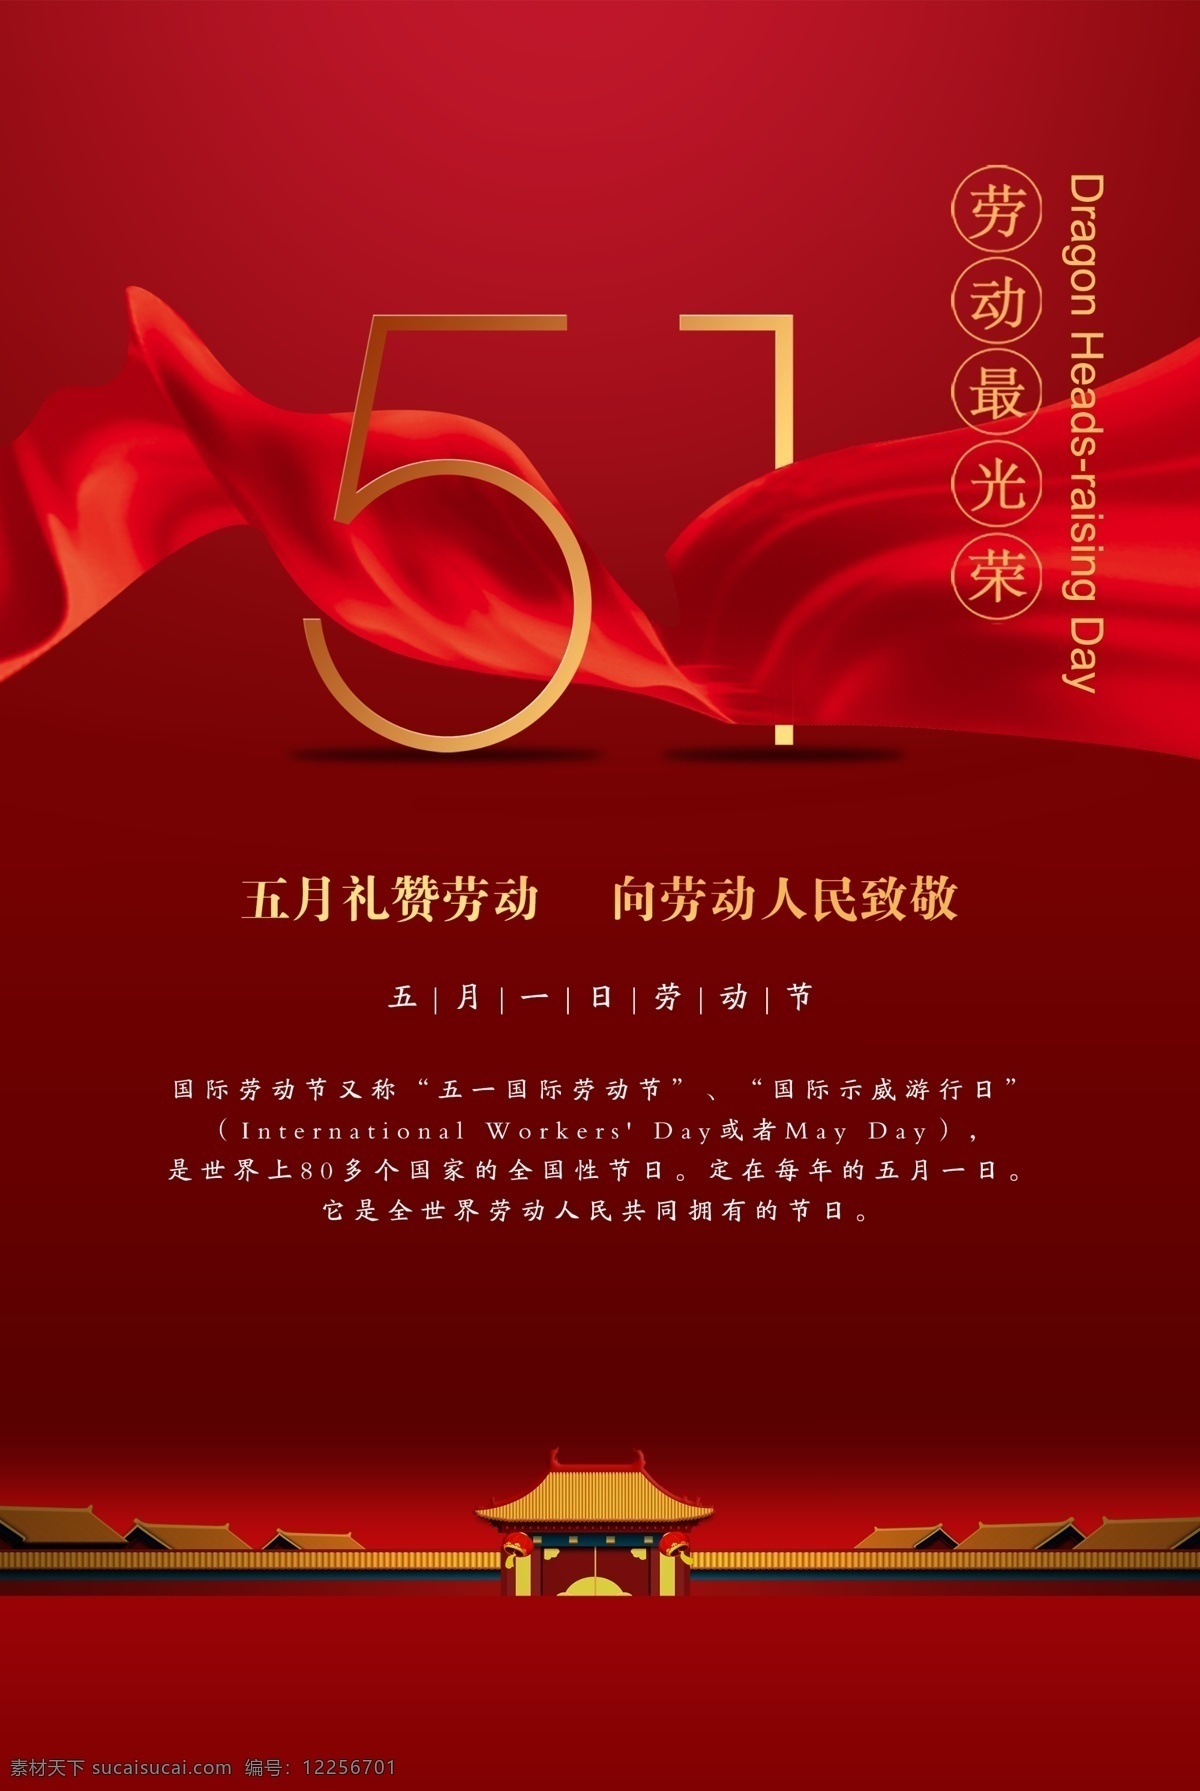 51 劳动节 国际劳动节 劳动 劳动人民 文化艺术 节日庆祝